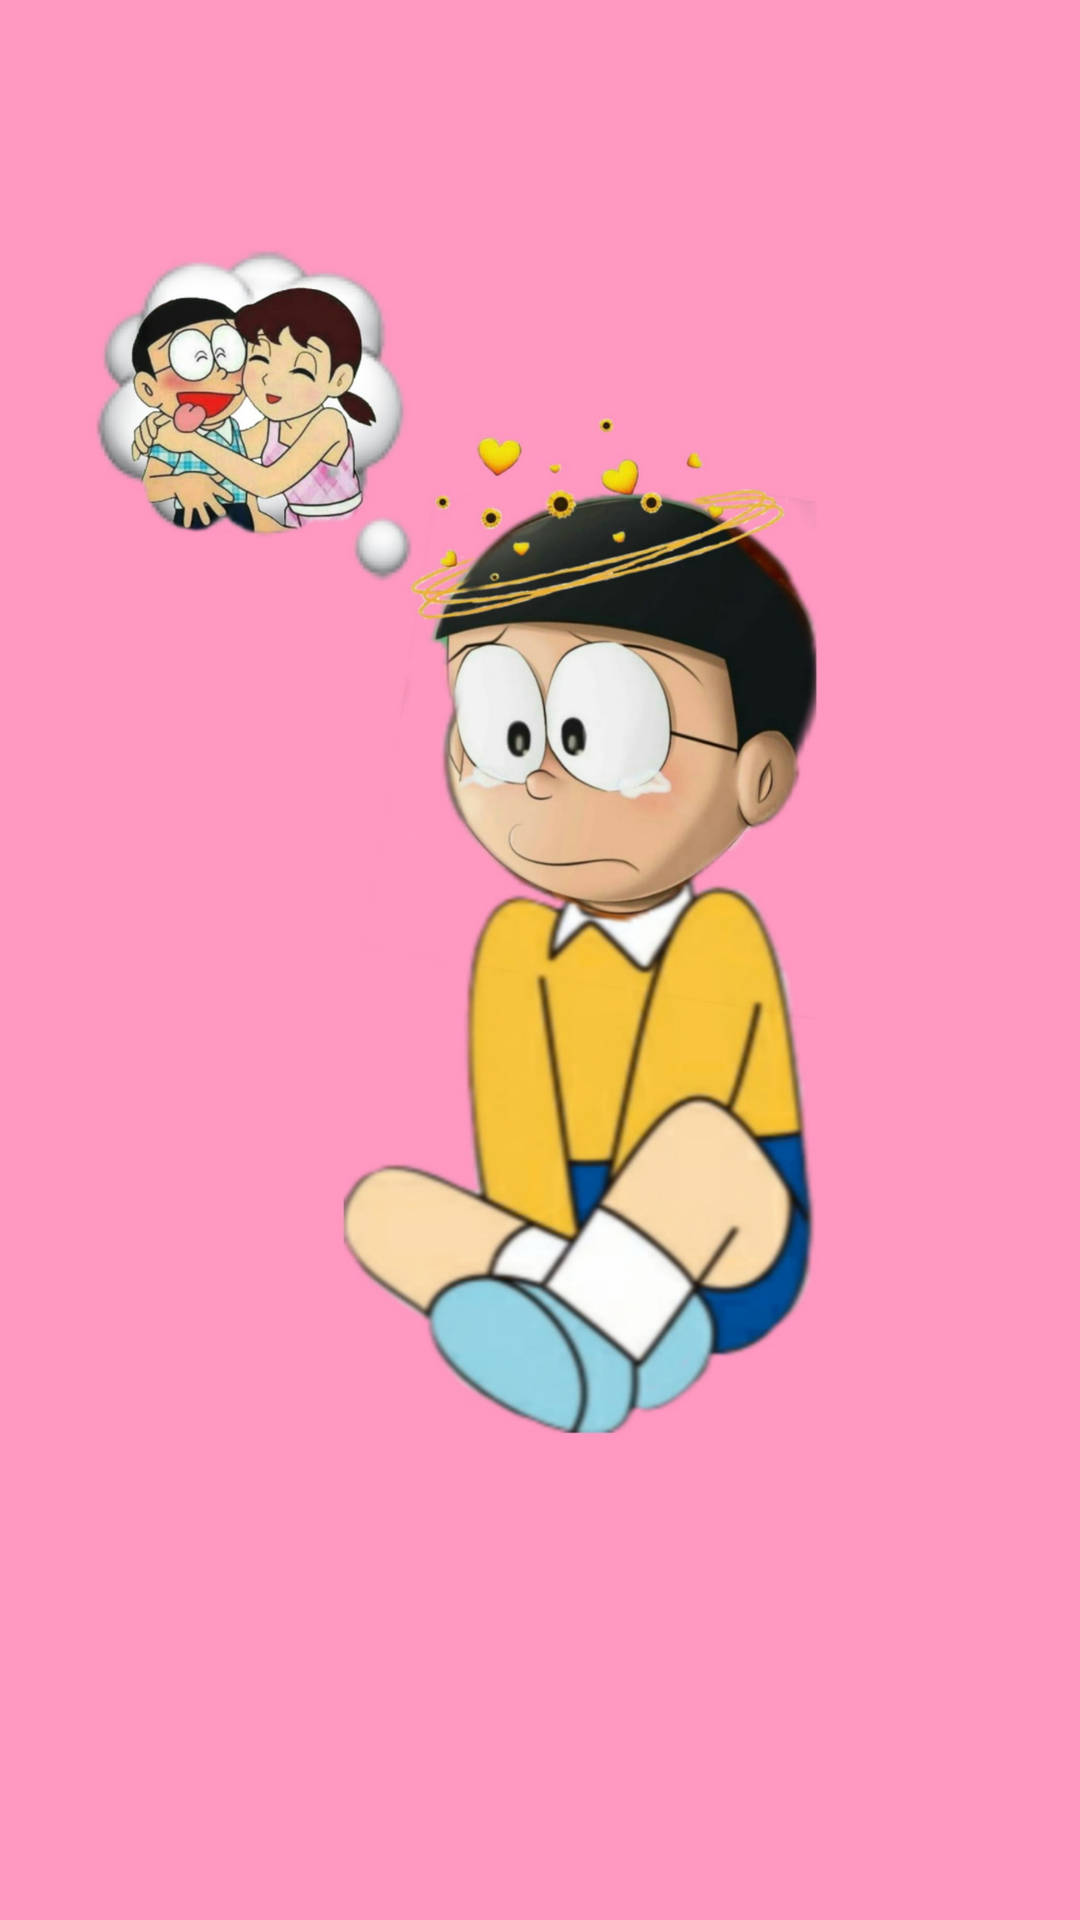 Sad Nobita Thinking About Shizuka Doraemon Background